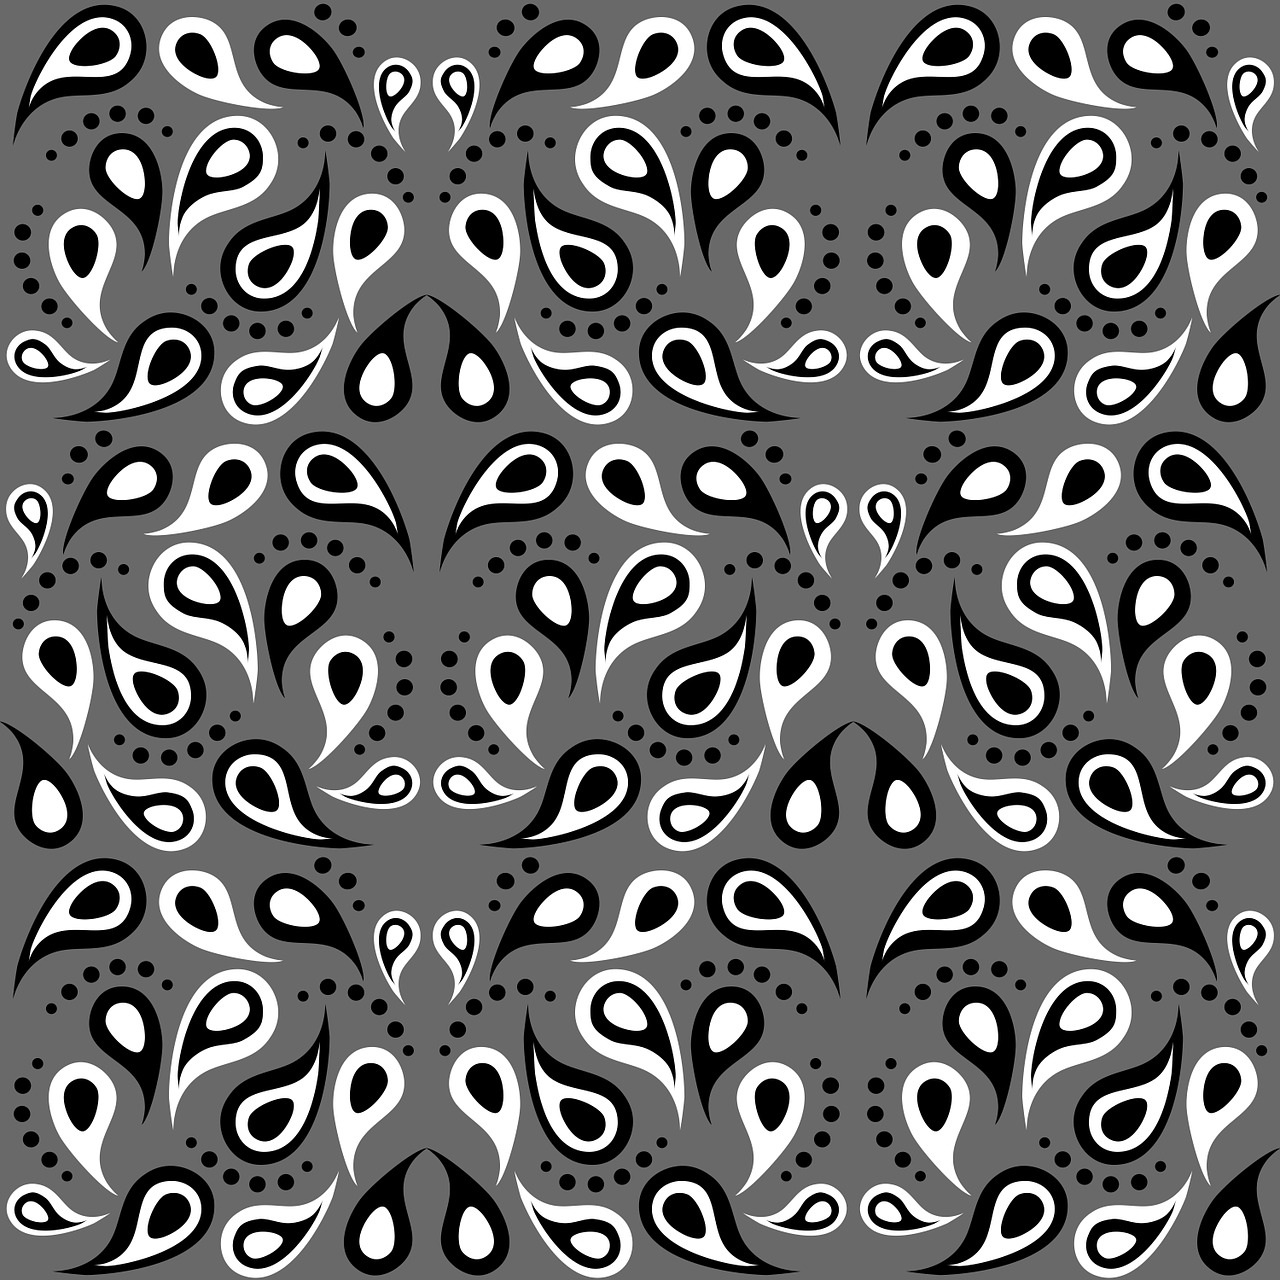 paisley pattern paisley pattern free photo